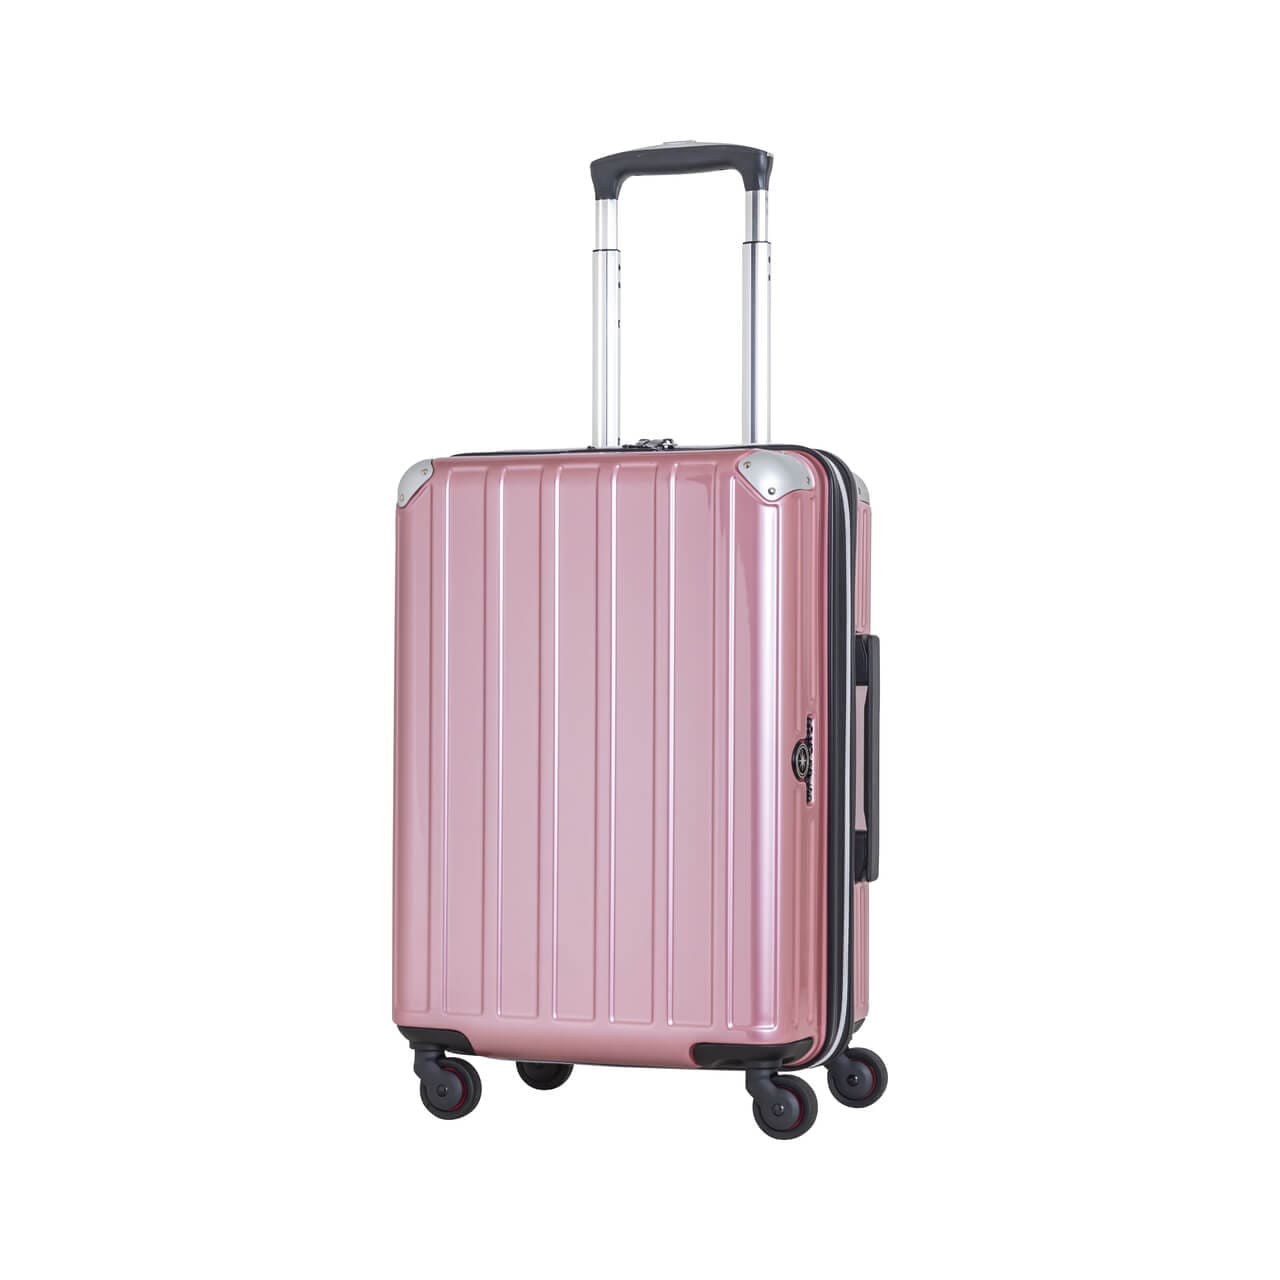 SKYNAVIGATORのスーツケースSK-0739-50のピンクの正面振り画像